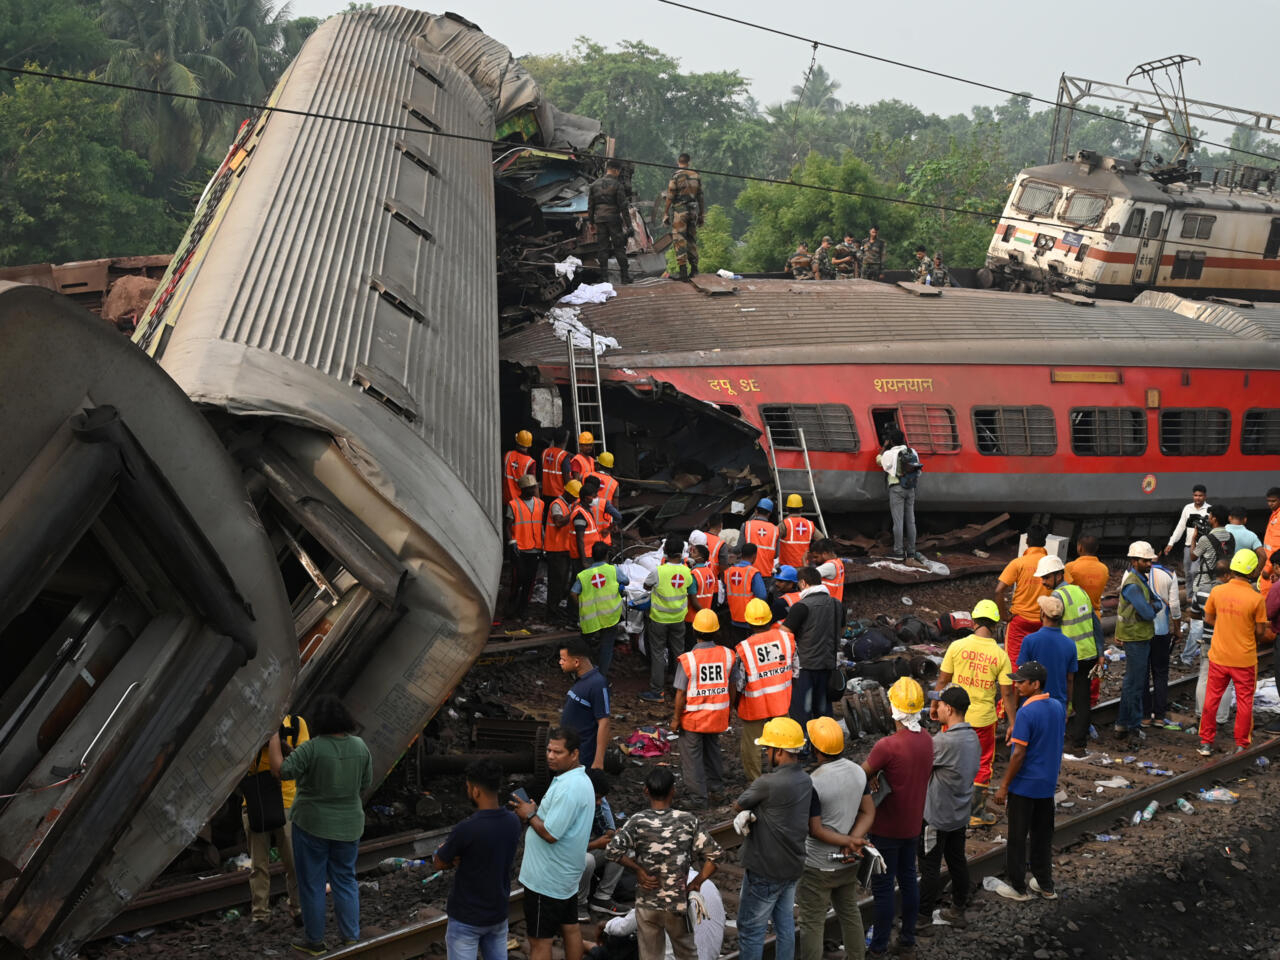 La peor tragedia ferroviaria: 280 muertos y cientos de heridos en India